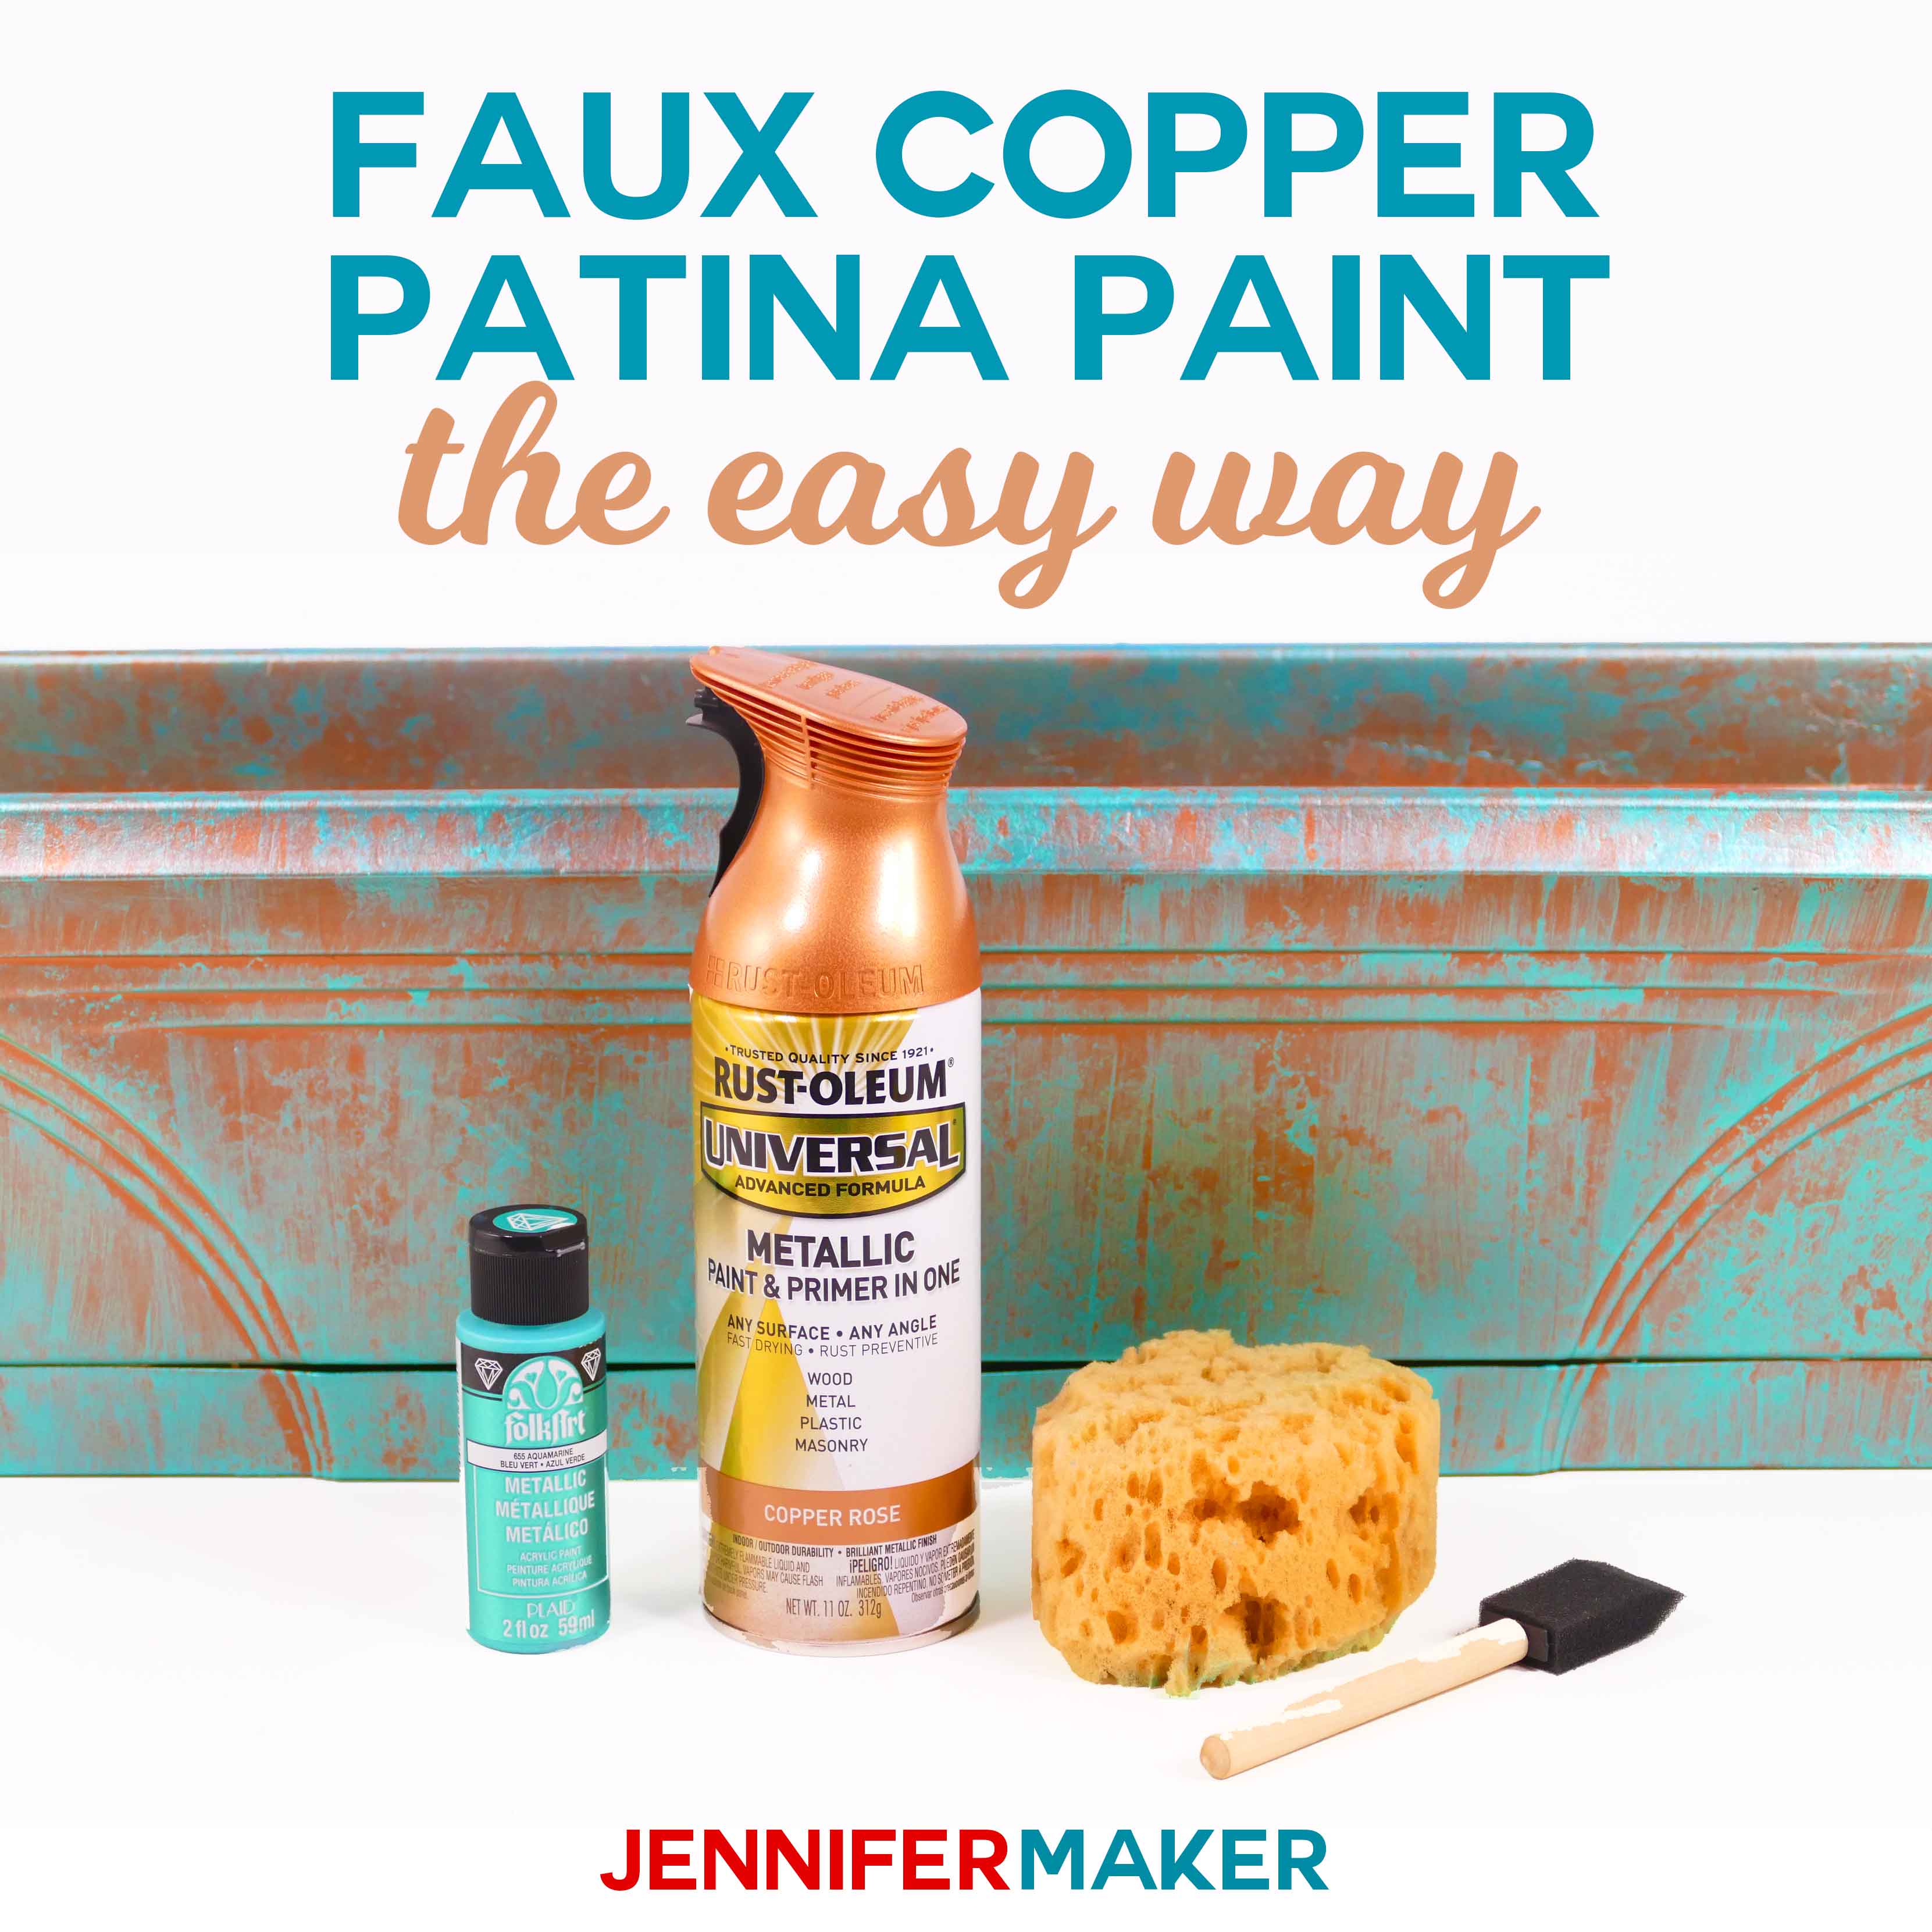 DIY Faux Copper Patina Paint Made the Easy Way #spraypaint #copper #planter #paintingtechnique